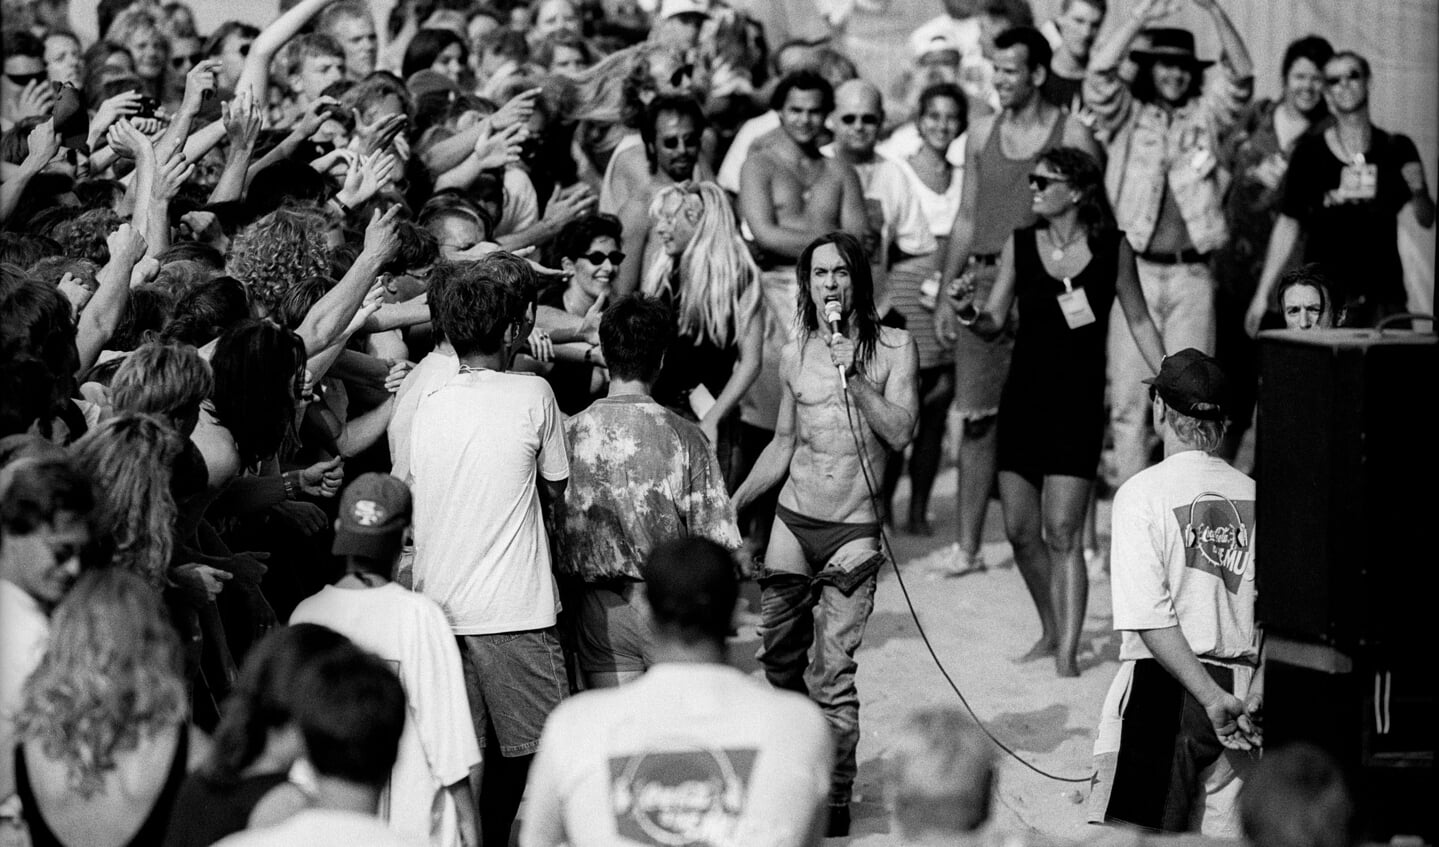 23-7-1994 Scheveningen, Nederland. De Amerikaanse rock- en punkzanger Iggy Pop treedt op tijdens Beachrock. Foto: Paul Bergen